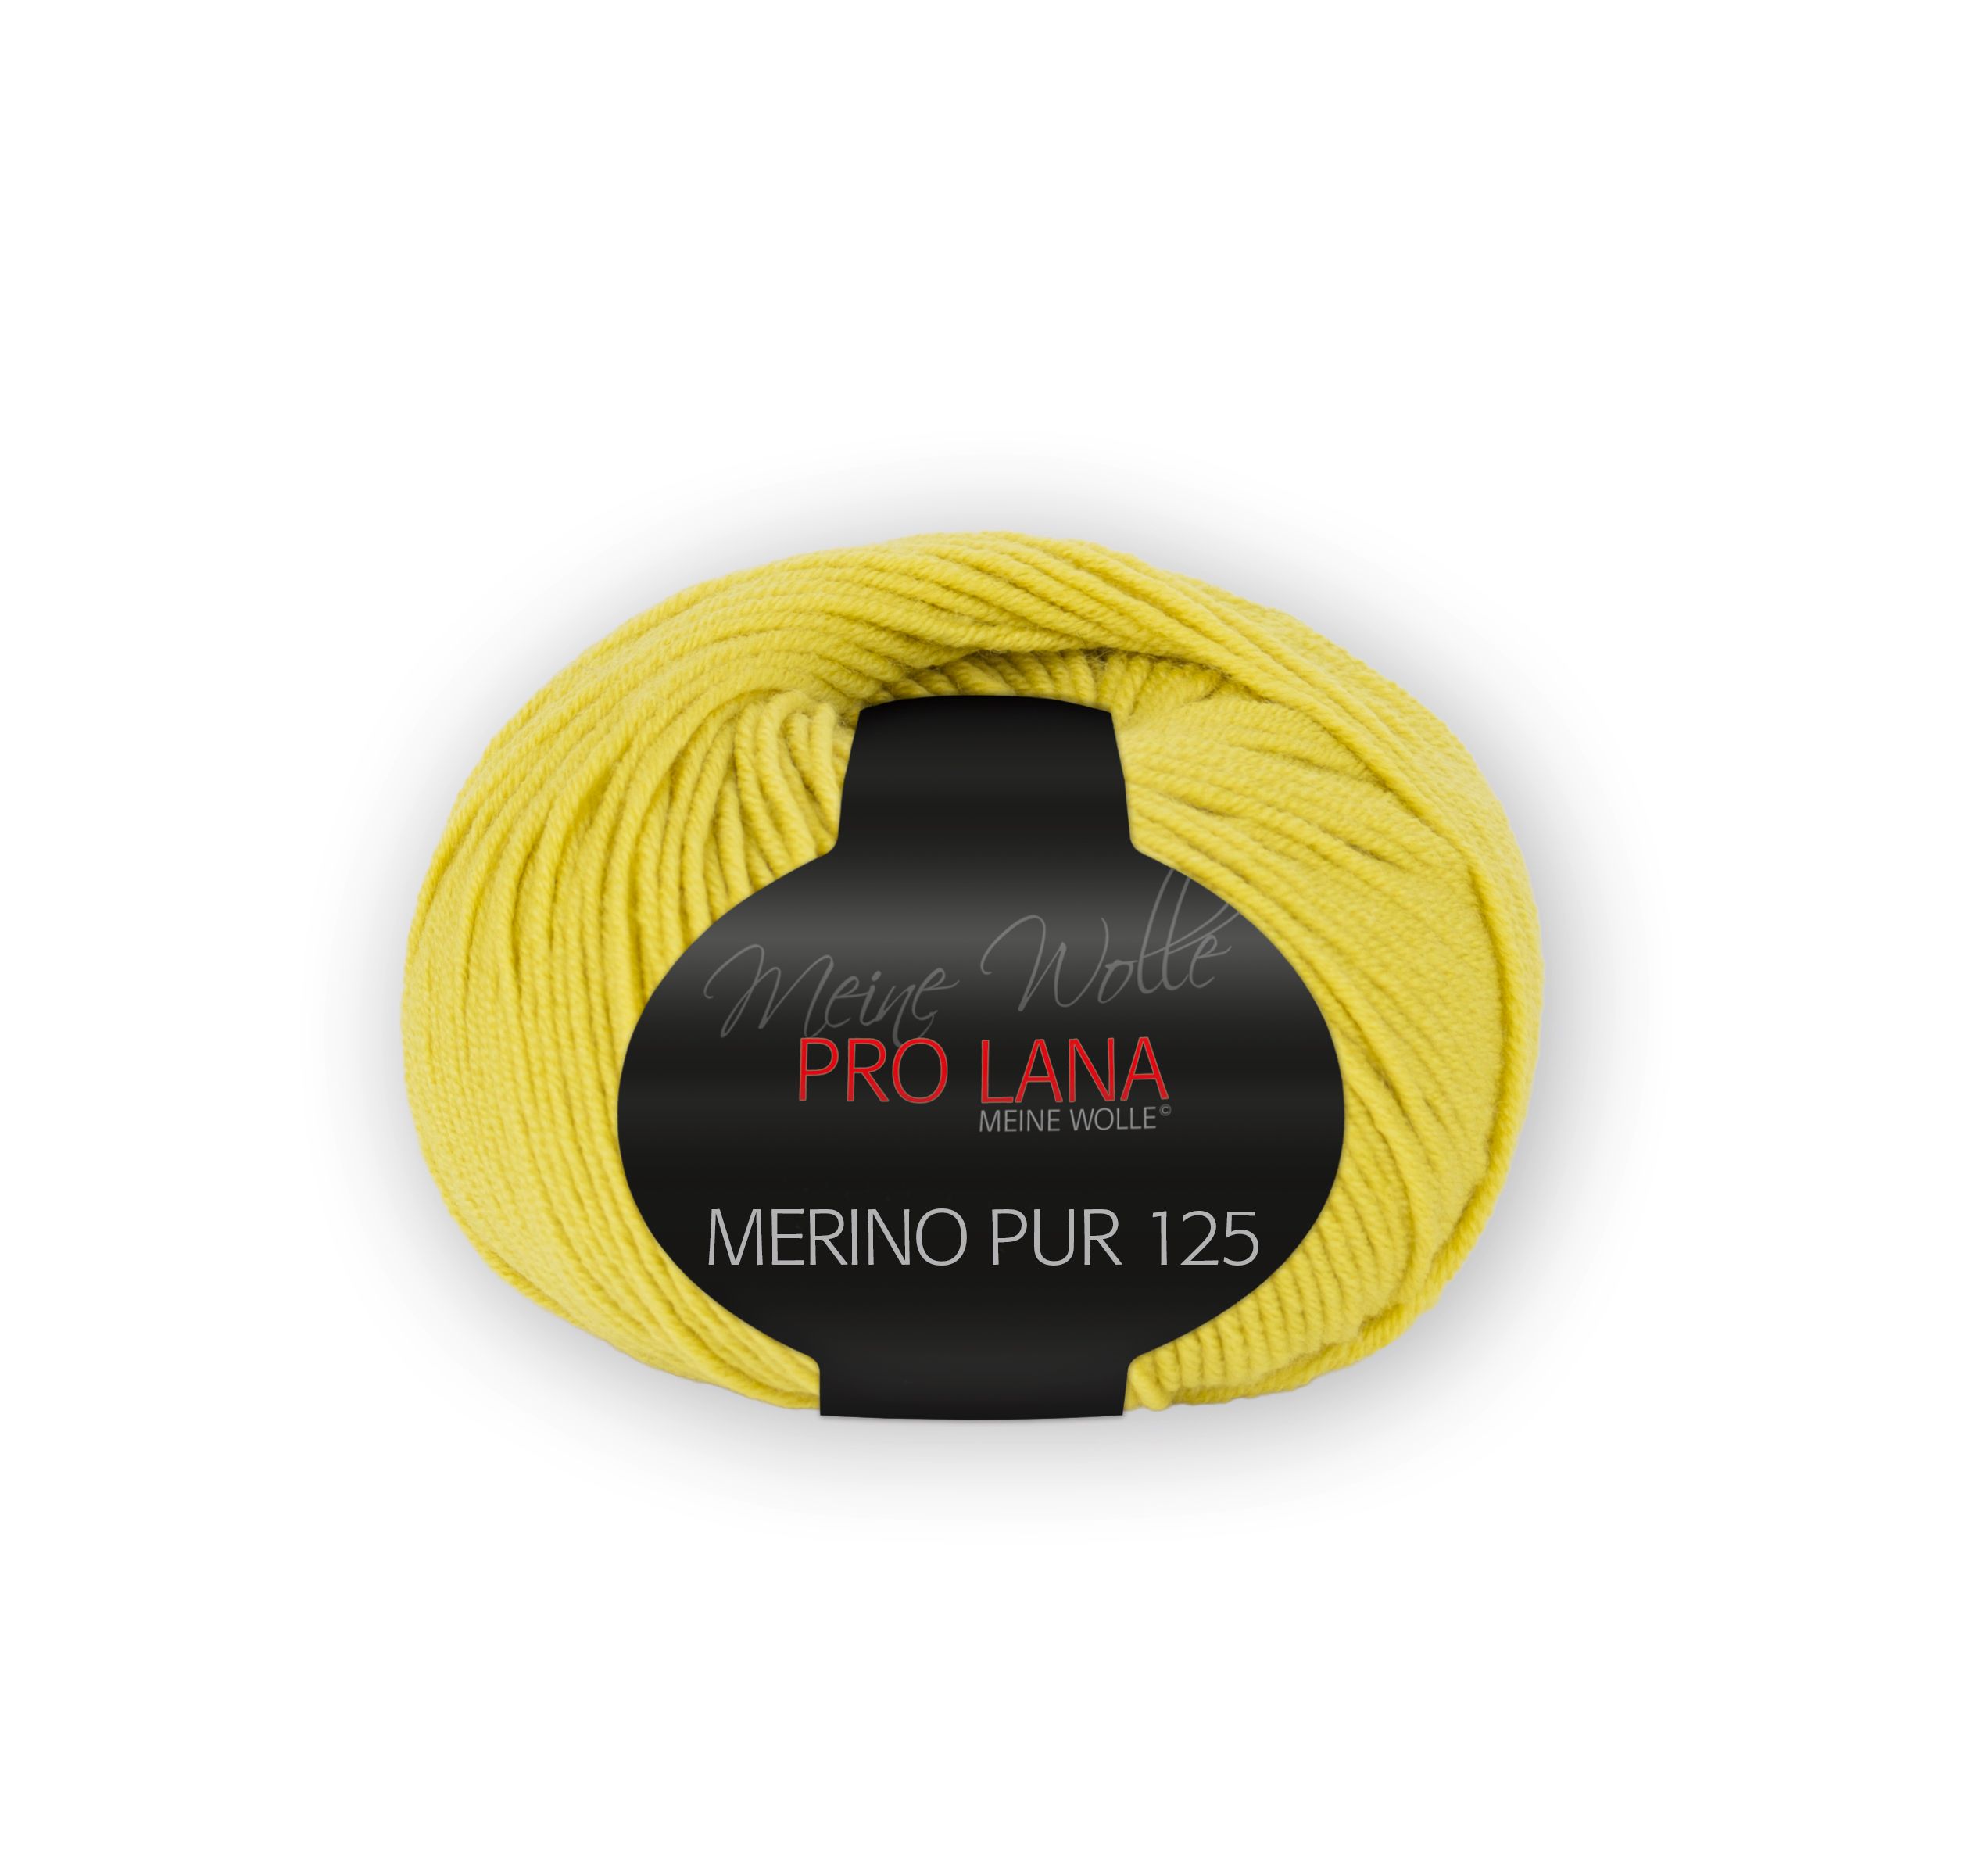 Pro Lana Merino Pur125 - Zitrone 72